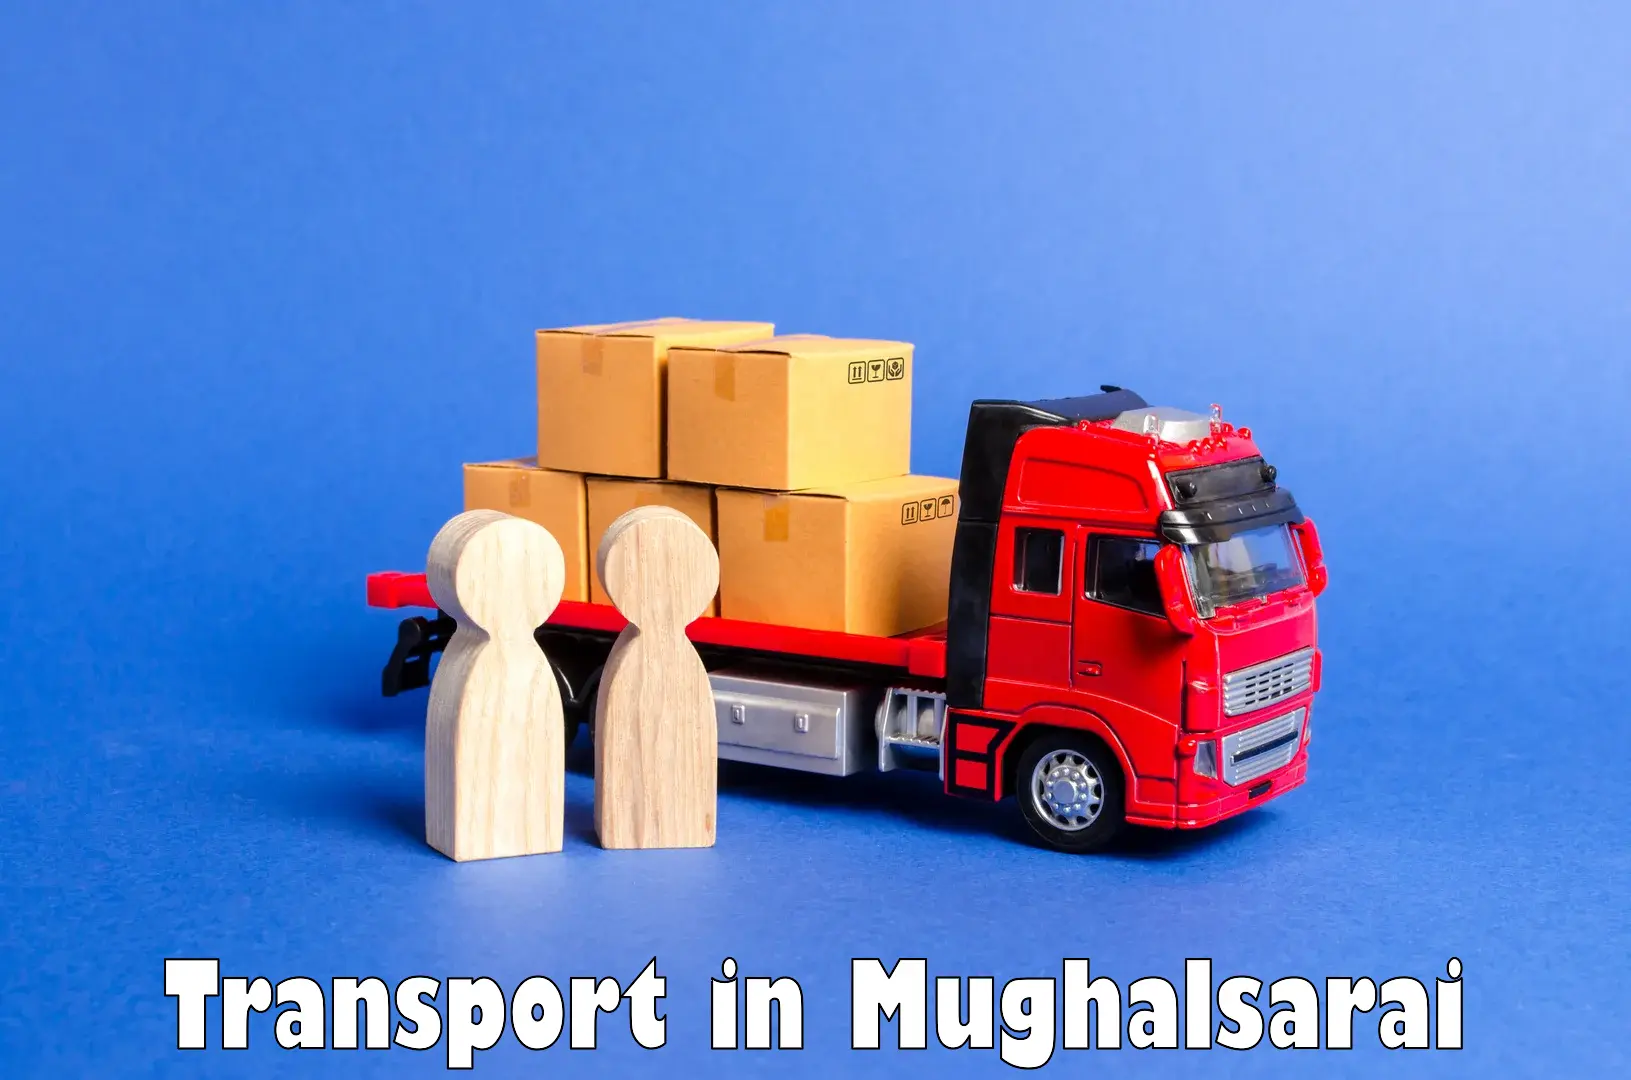 Pick up transport service in Mughalsarai